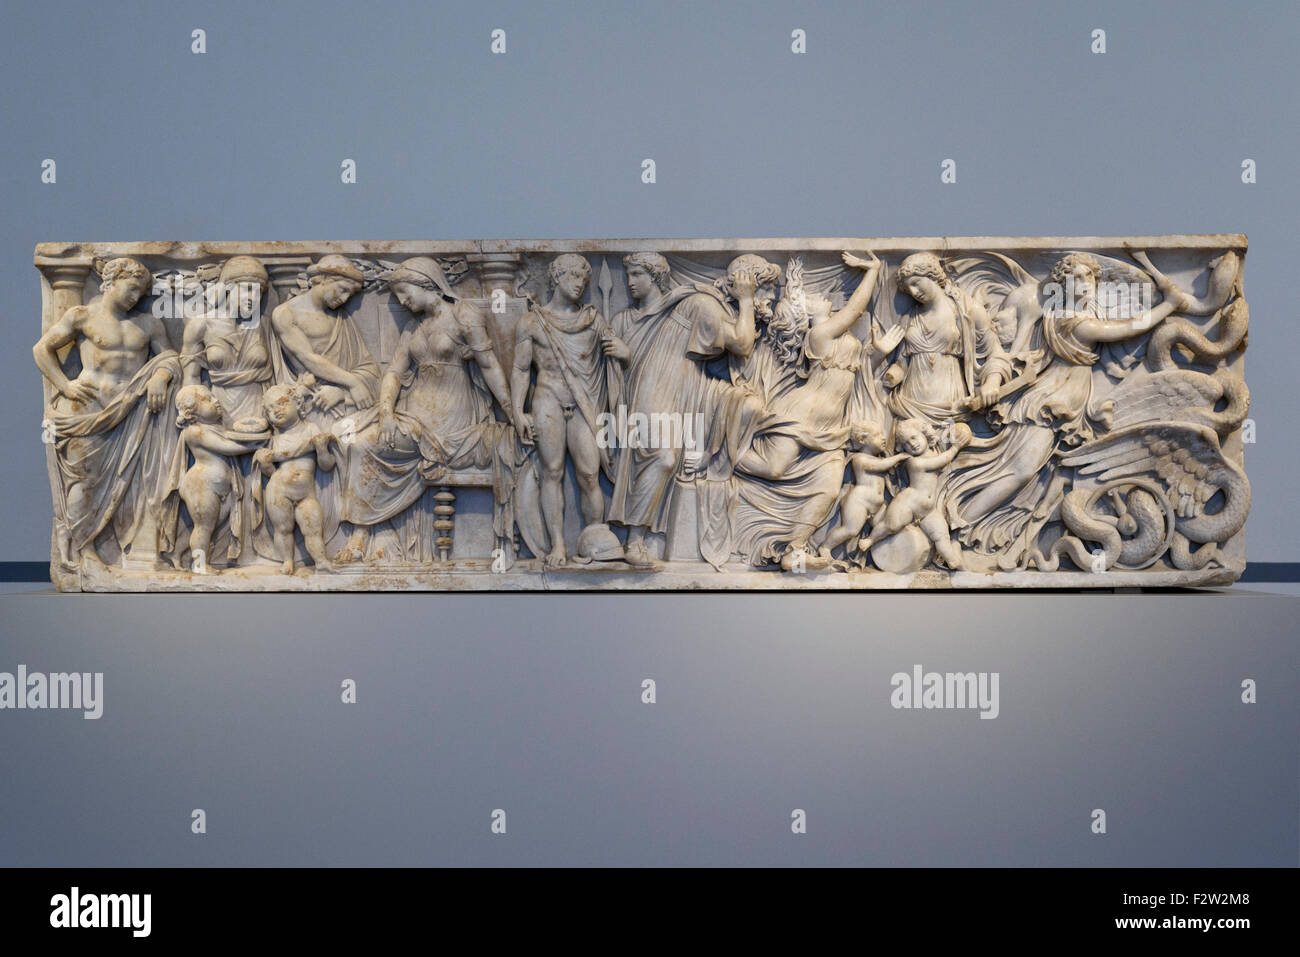 Berlin. Deutschland. Medea-Sarkophag, Marmor, in Rom 140-150 n. Chr. hergestellt. Altes Museum. Stockfoto